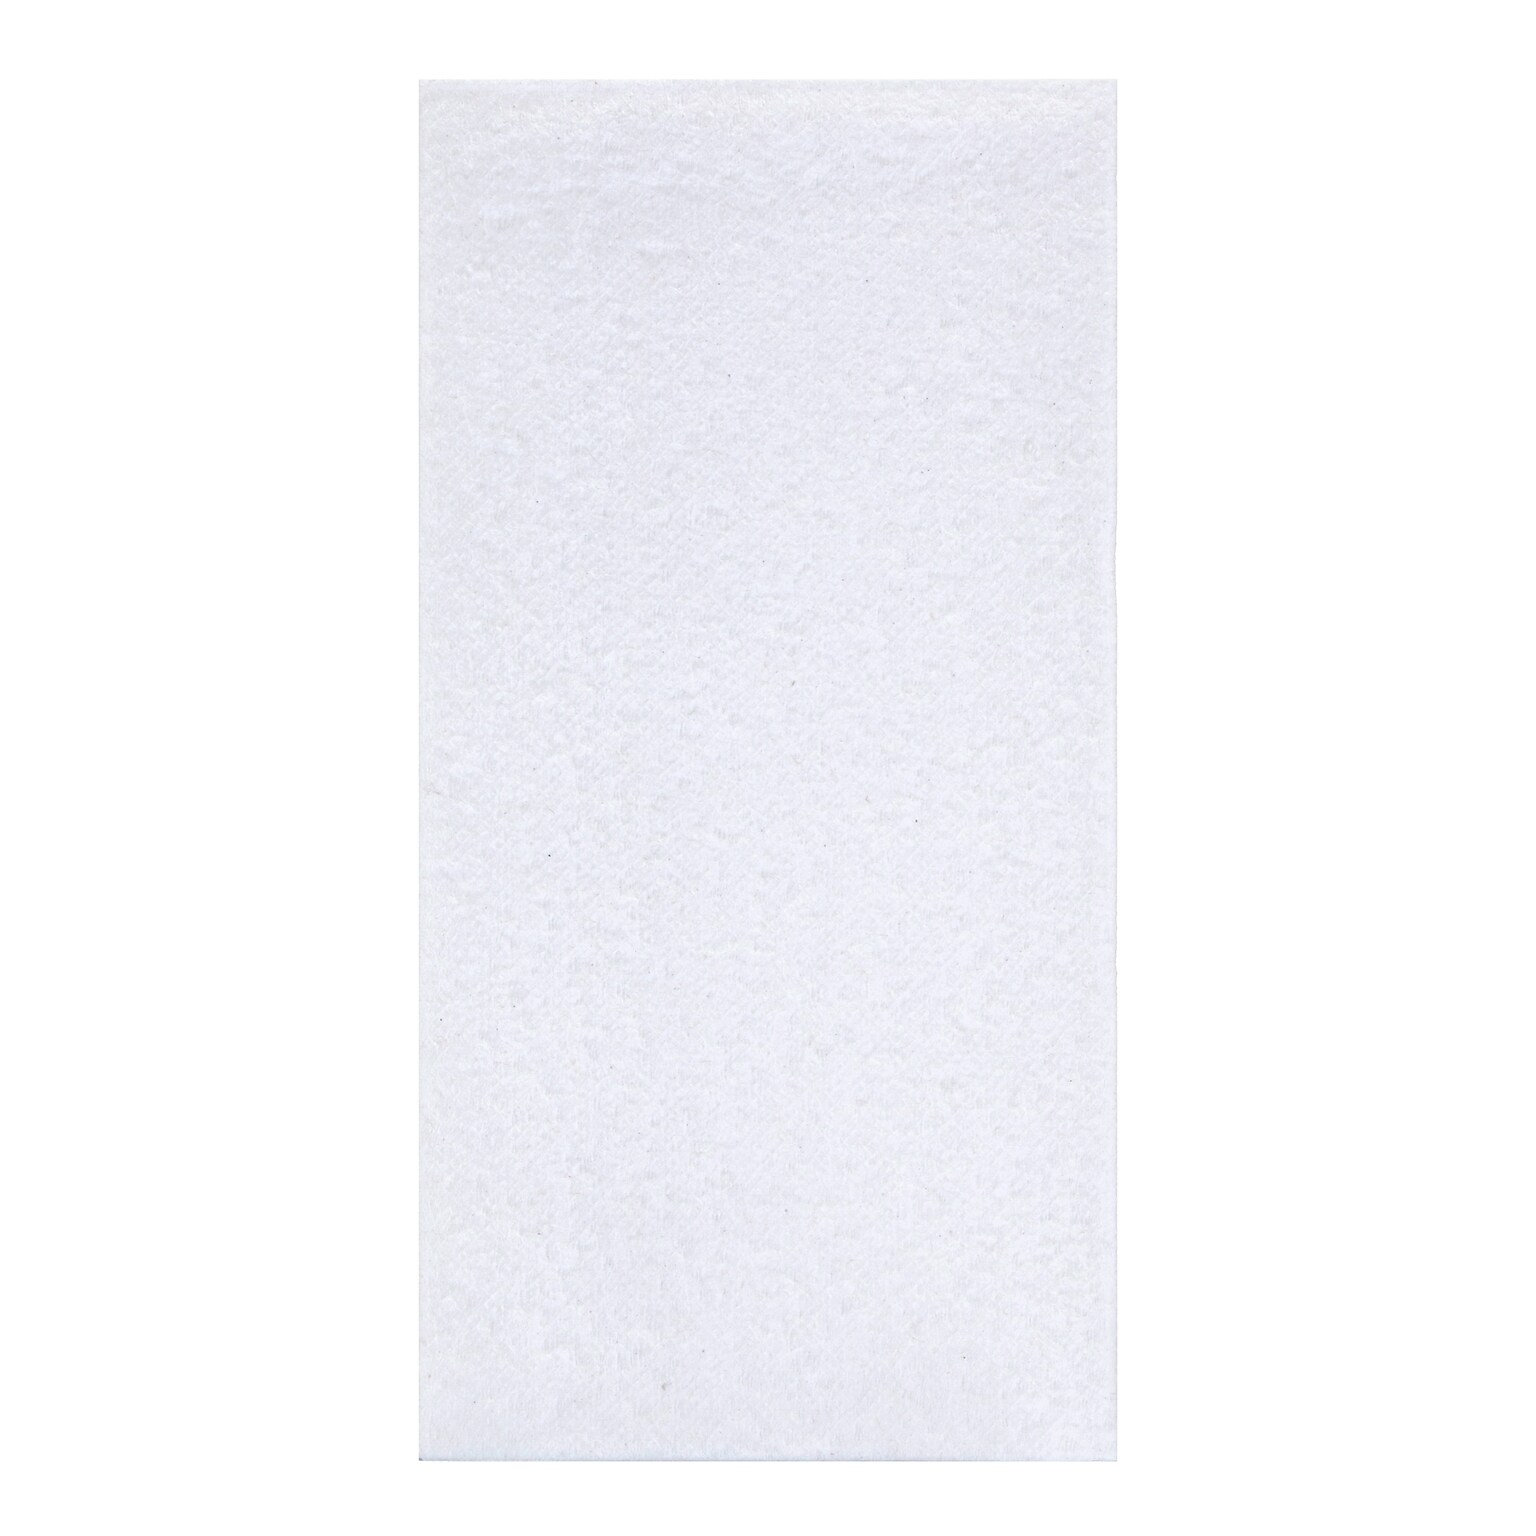 White Linen Like Natural Dinner Napkin (3043911)